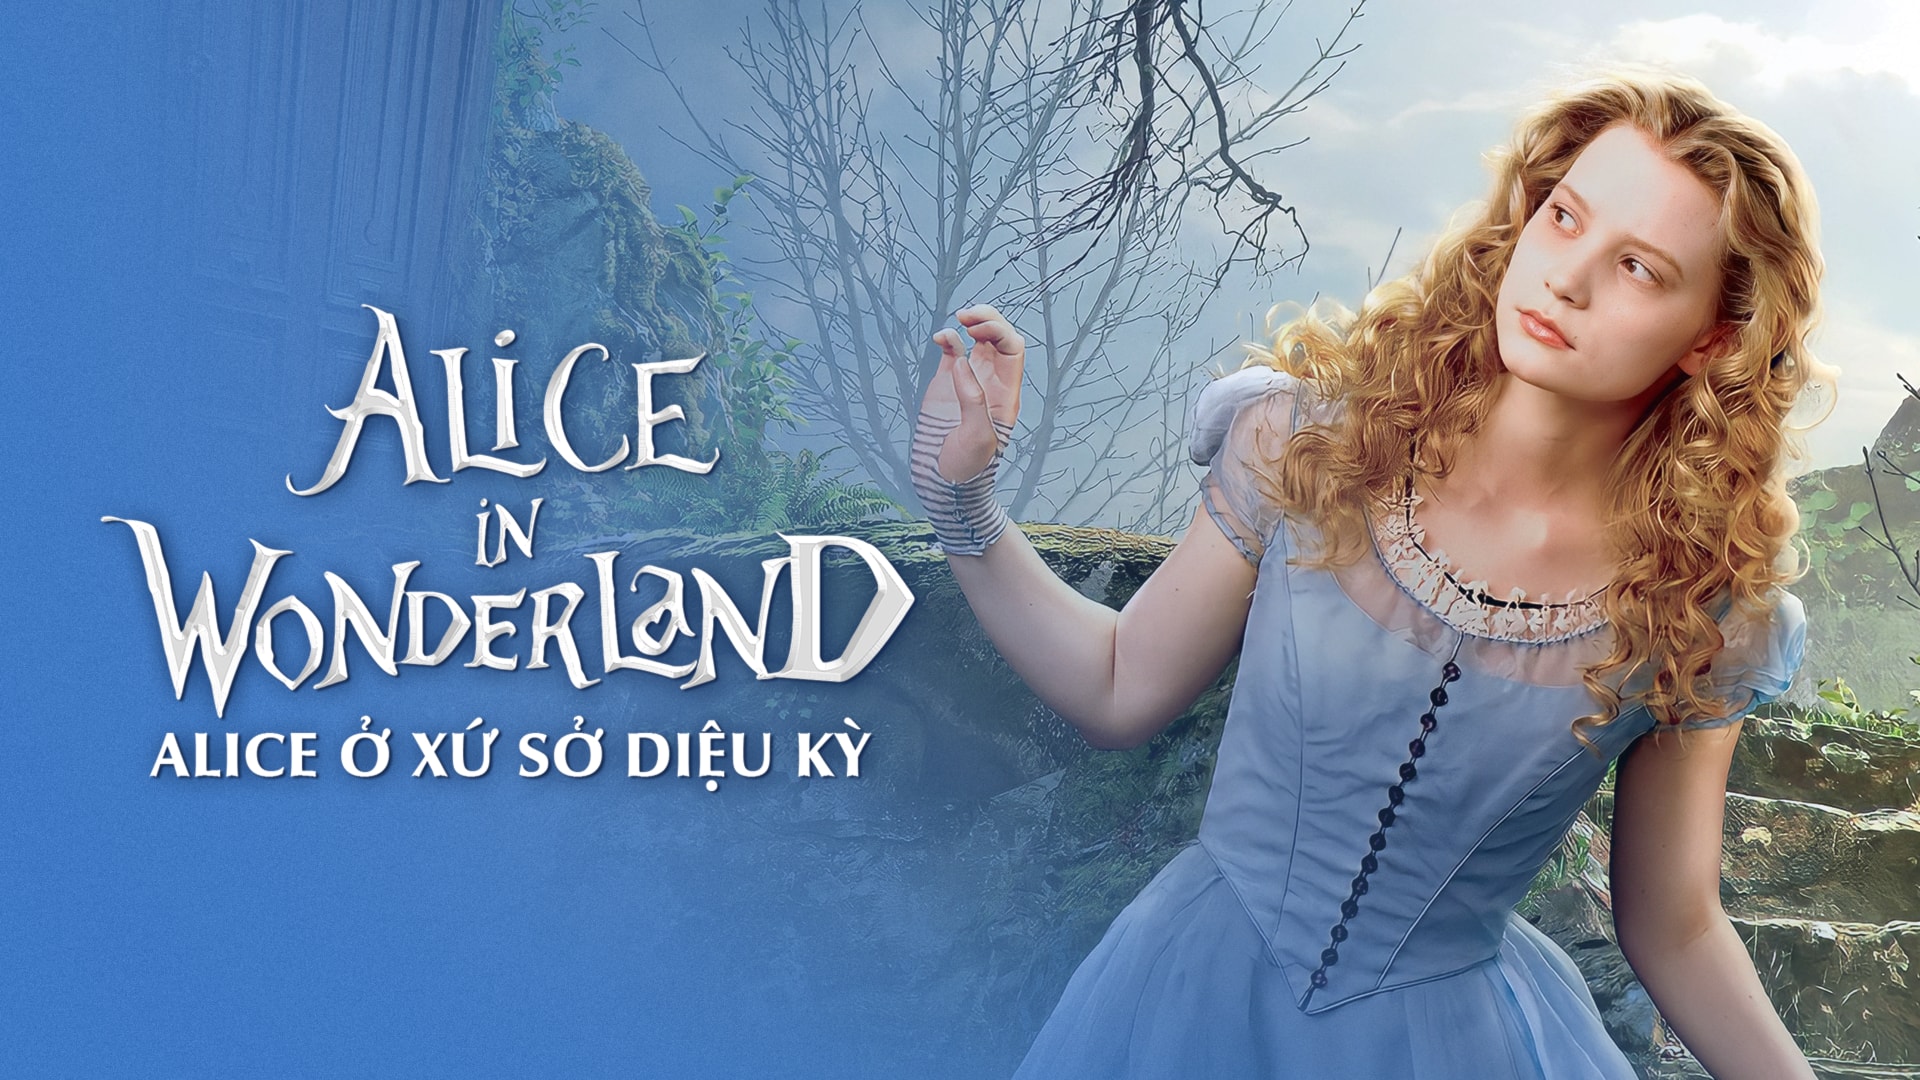 Ai cũng yêu câu chuyện kinh điển Alice in Wonderland. Hãy đến với chúng tôi để cùng xem những bức ảnh đẹp như trong truyện và đắm mình trong câu chuyện cổ tích đầy màu sắc.